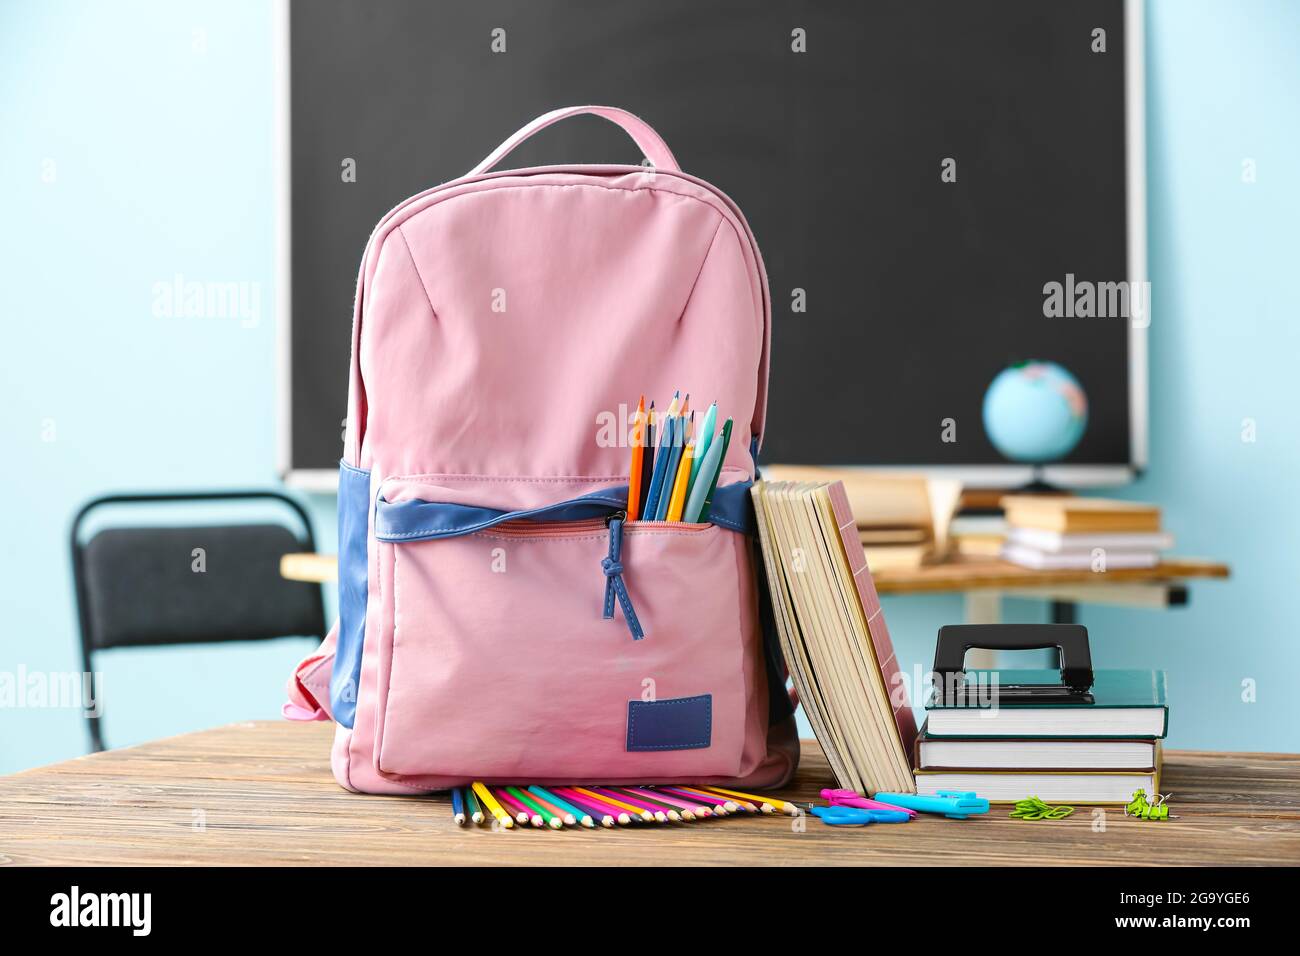 Sac à dos pour l'école avec modèle sur table en classe Photo Stock - Alamy